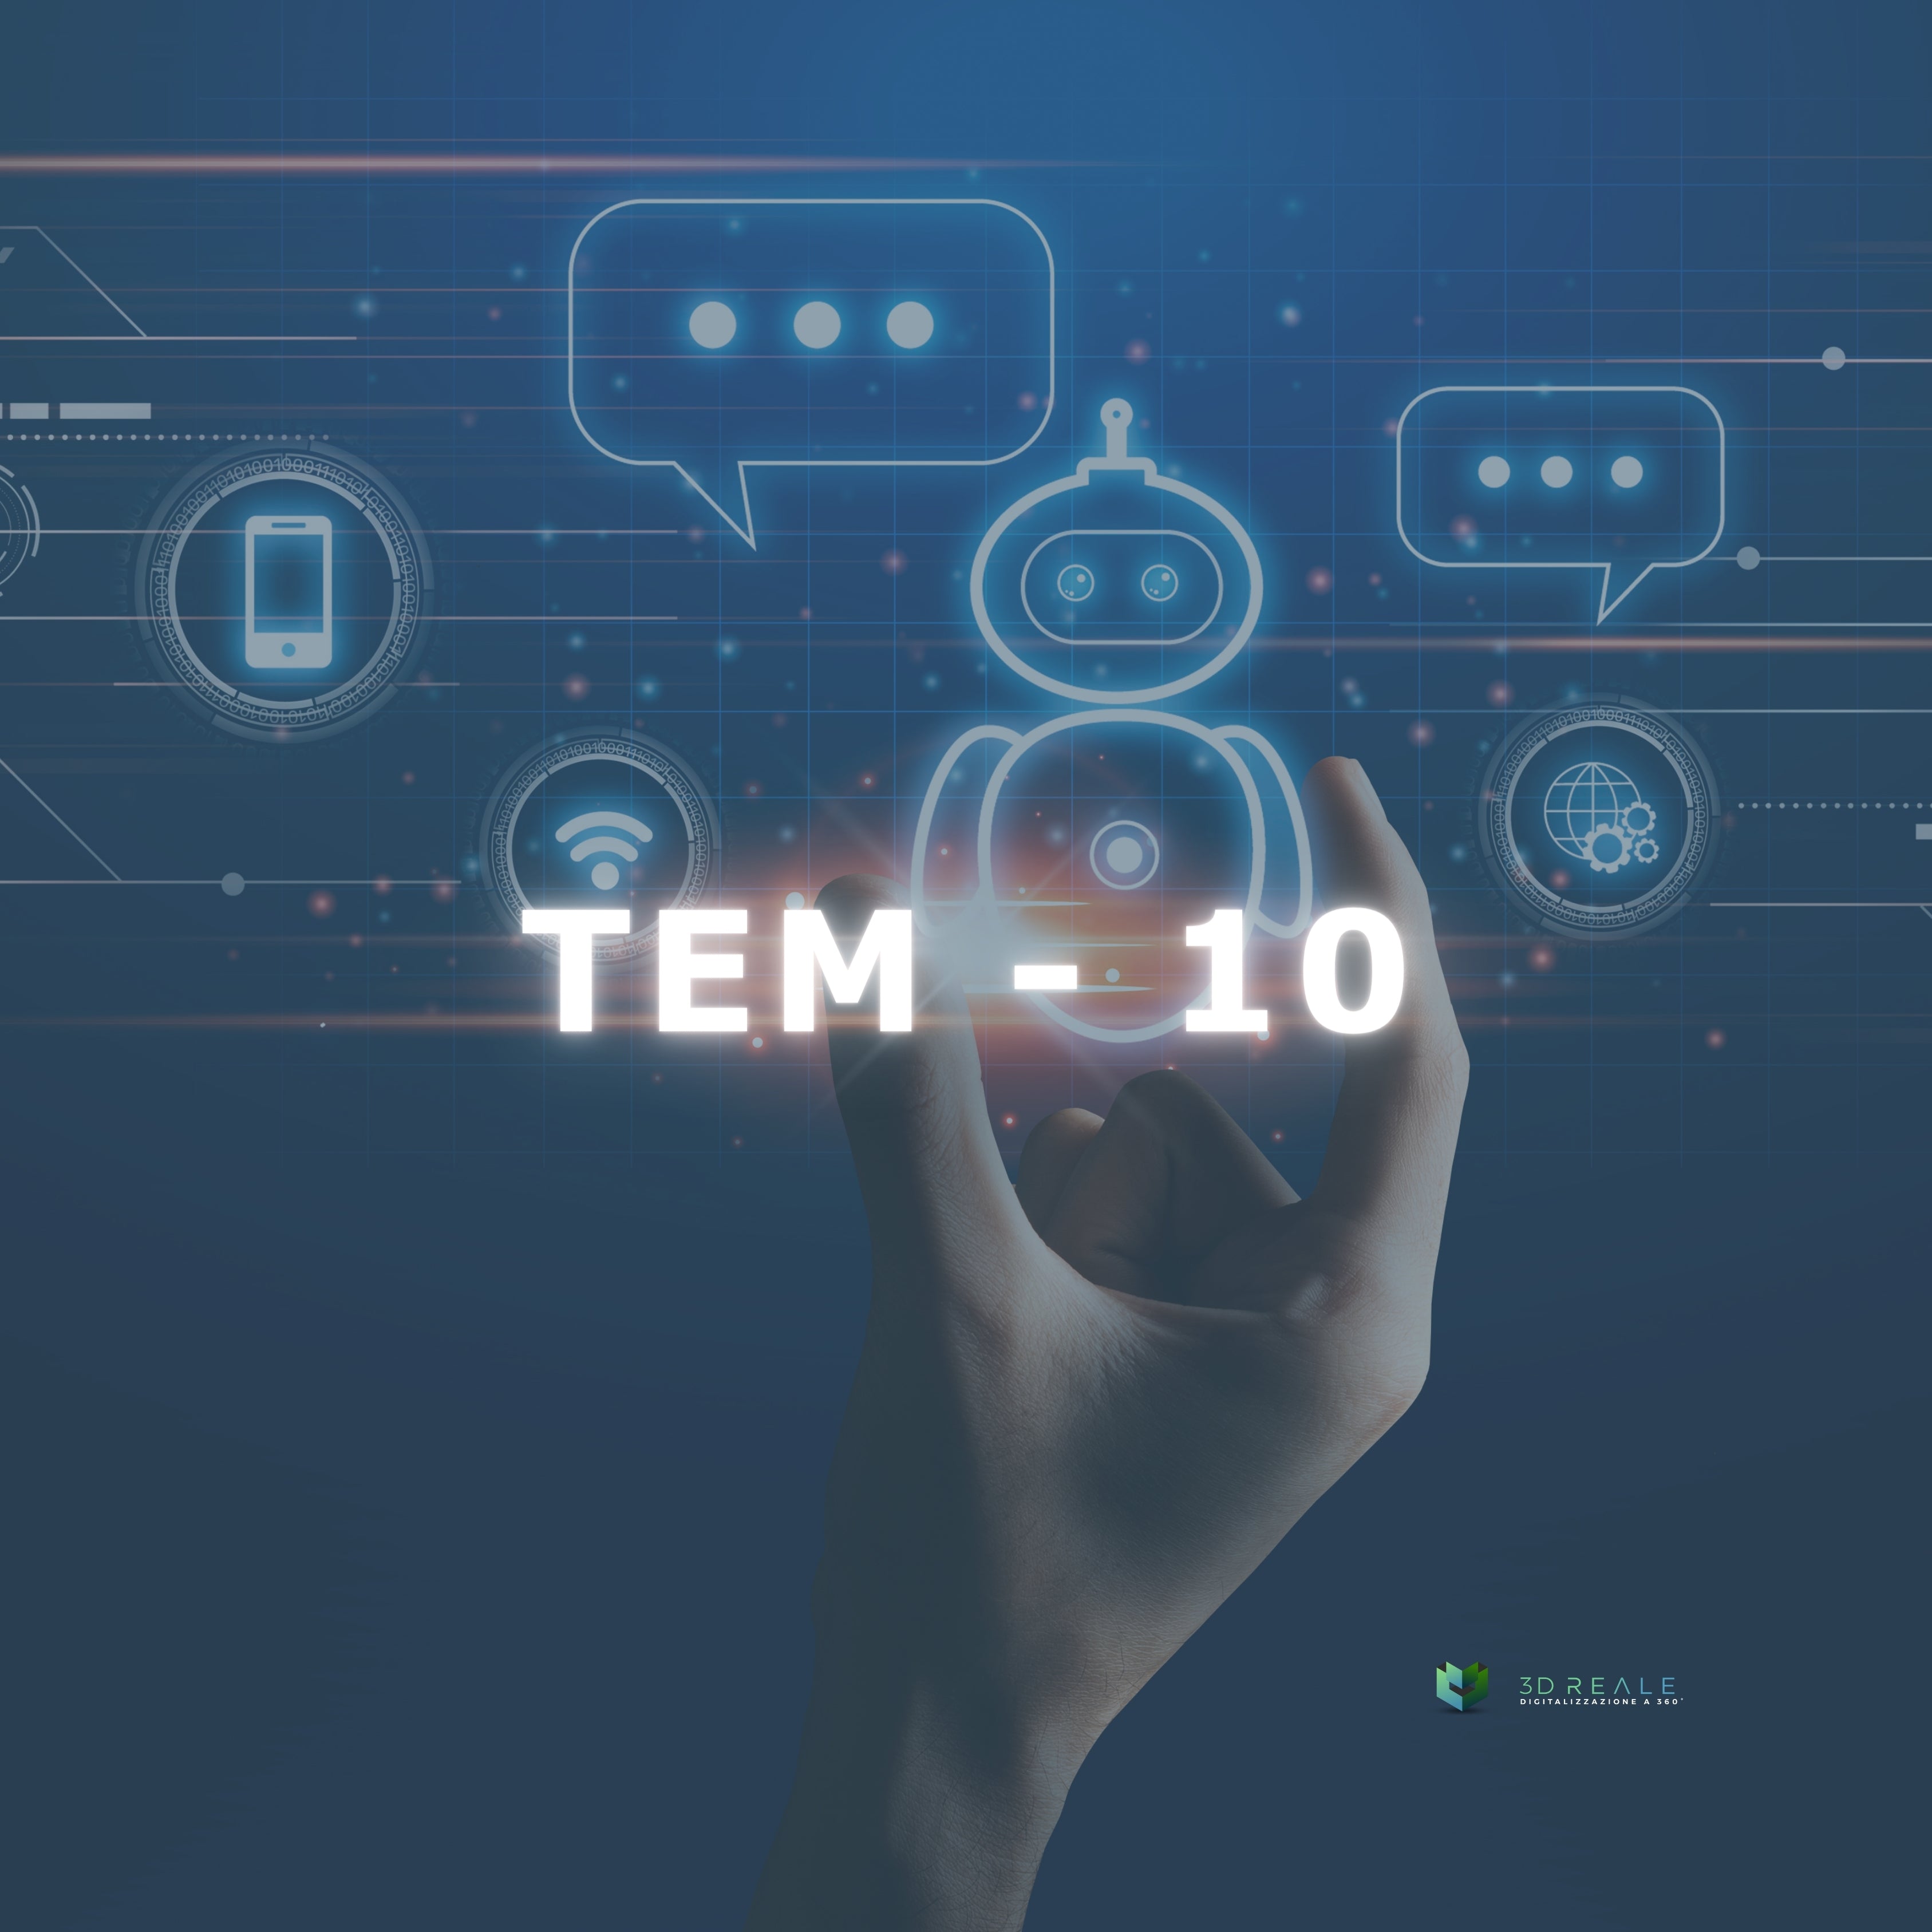 TEM - 10